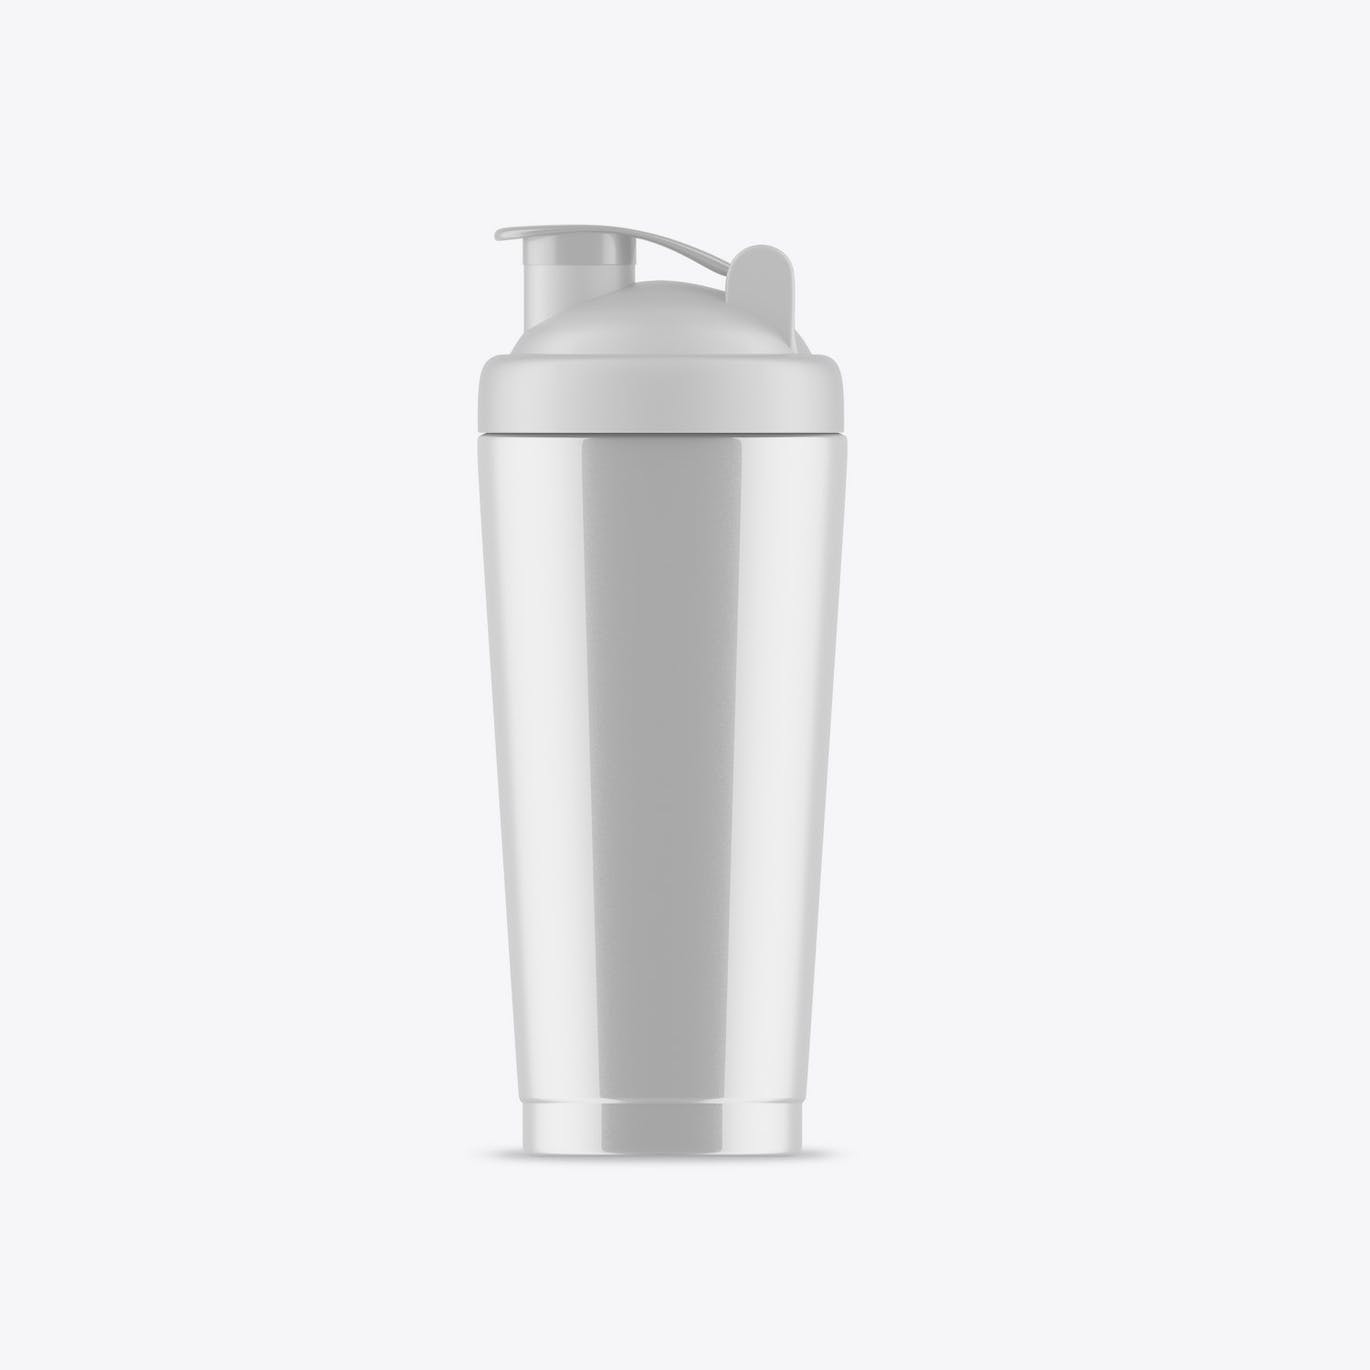 健身房运动水瓶包装设计样机 Gym Bottle Mockup 样机素材 第5张